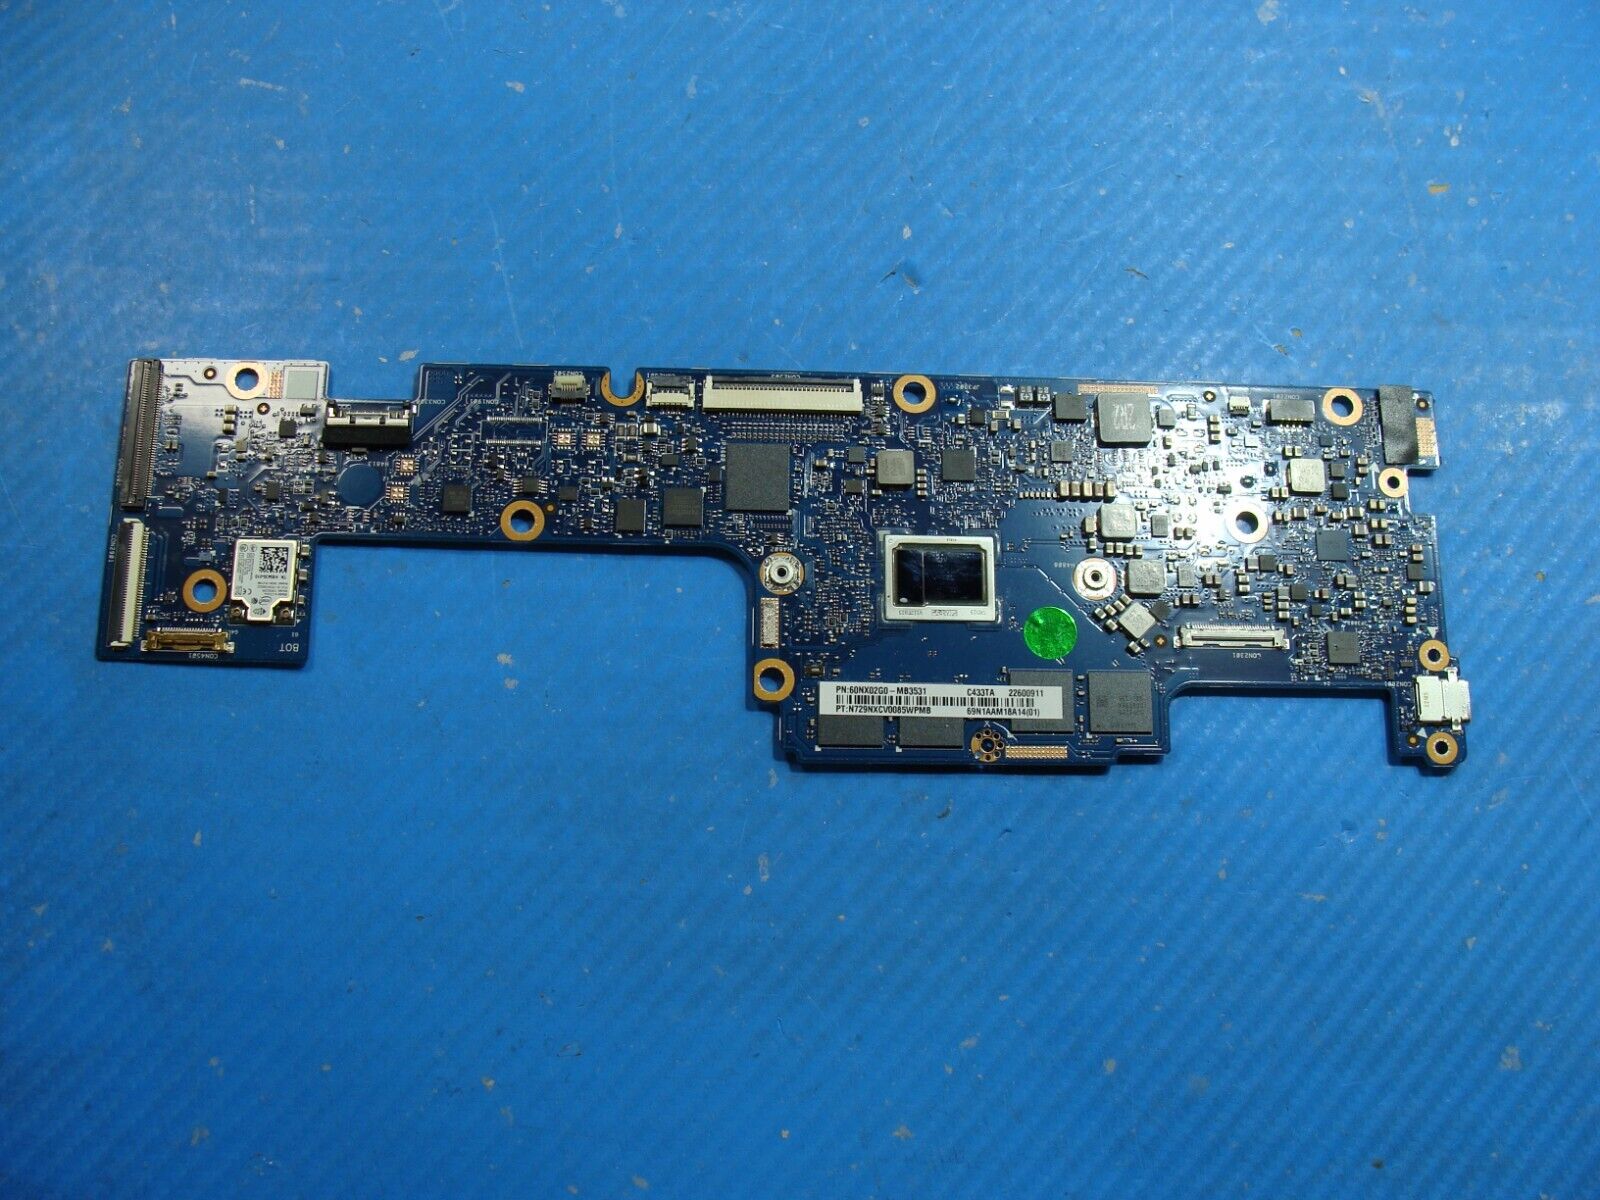 Asus ChromeBook Flip C433TA-M364 M3-8100Y 8GB Motherboard 60NX02G0-MB3531 AS IS